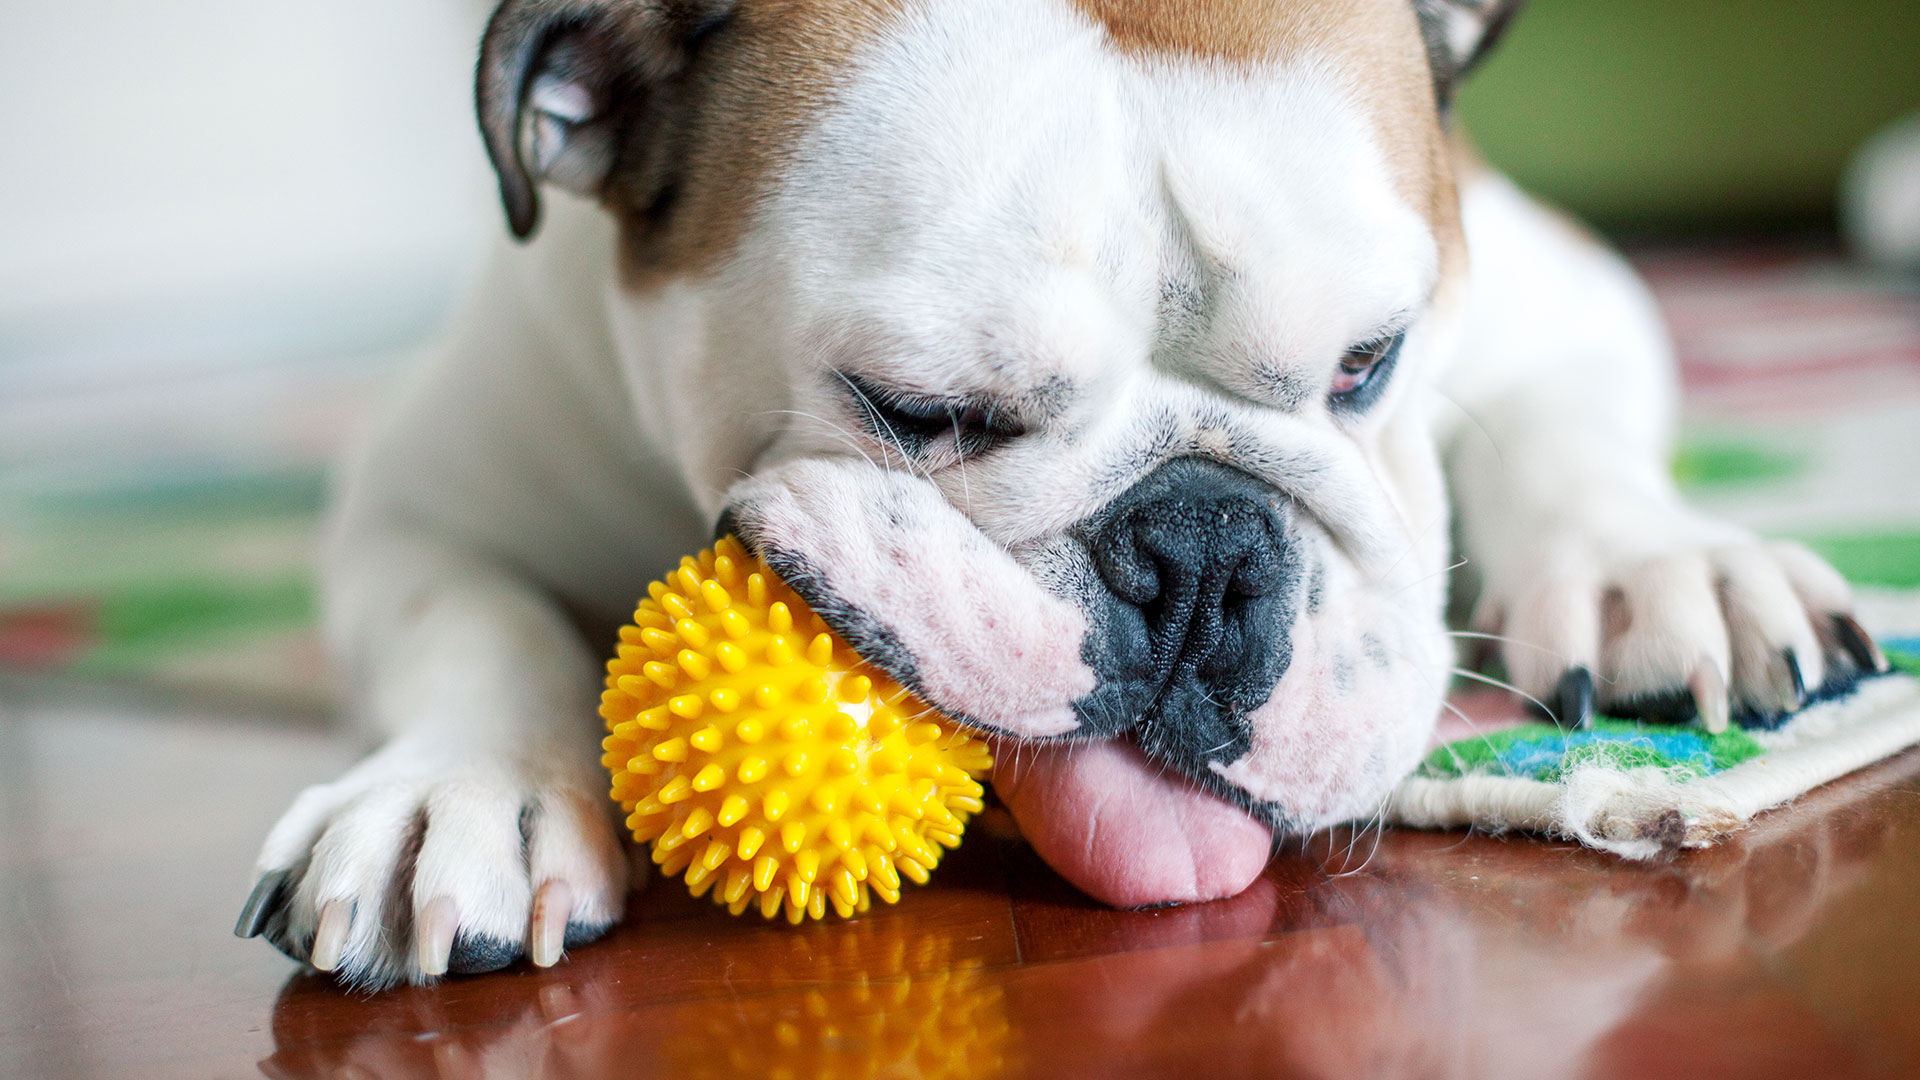 “Si podemos entender qué sentidos usan los perros mientras buscan un juguete, esto puede revelar cómo piensan al respecto”, señalaron los investigadores